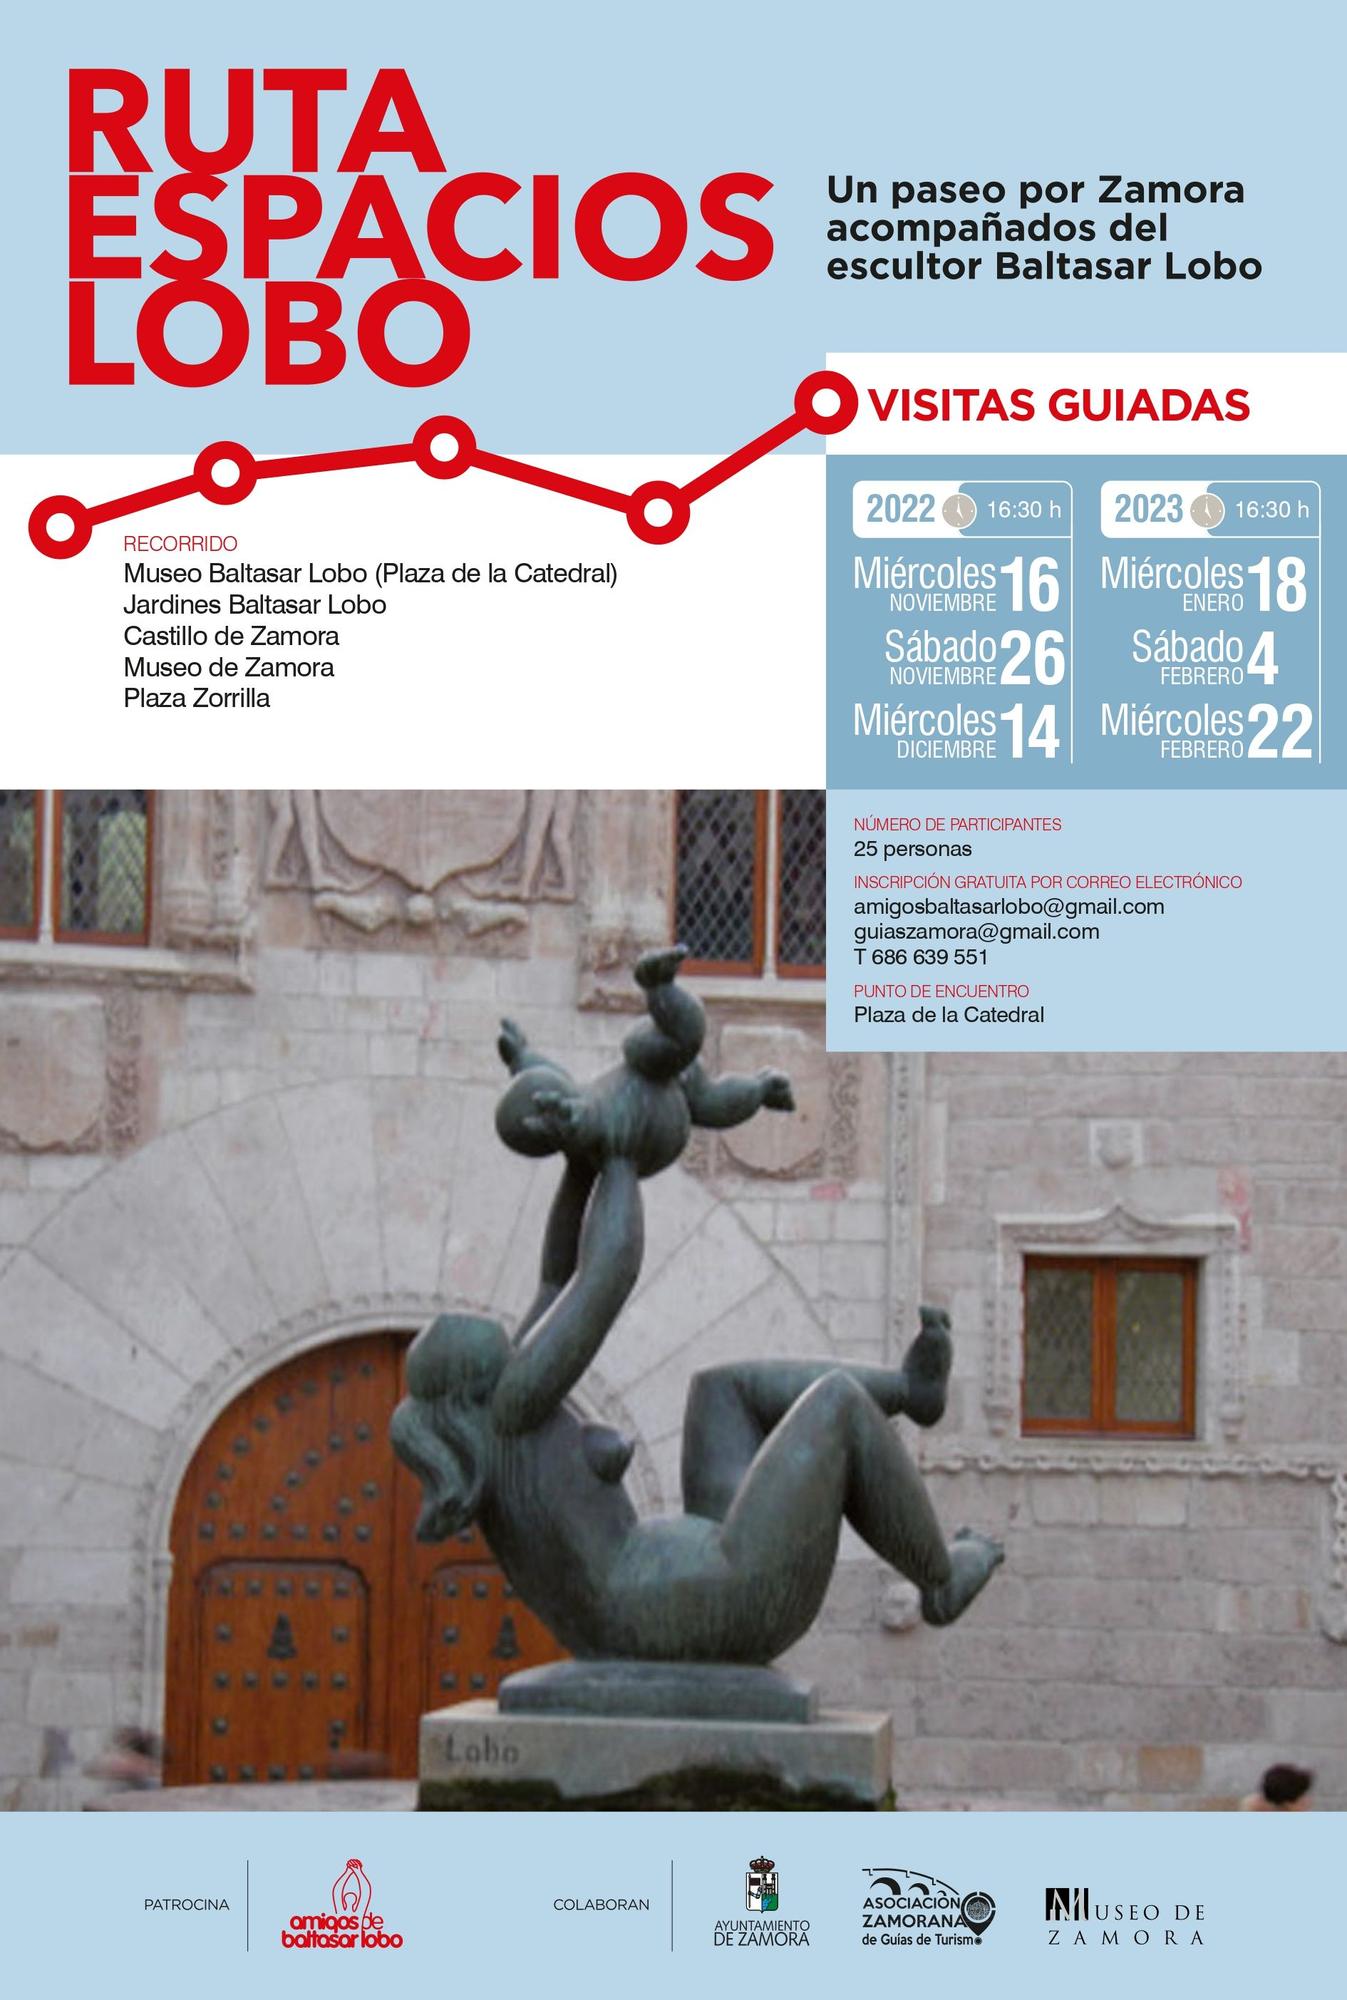 Visitas guiadas para conocer la obra de Baltasar Lobo en Zamora.